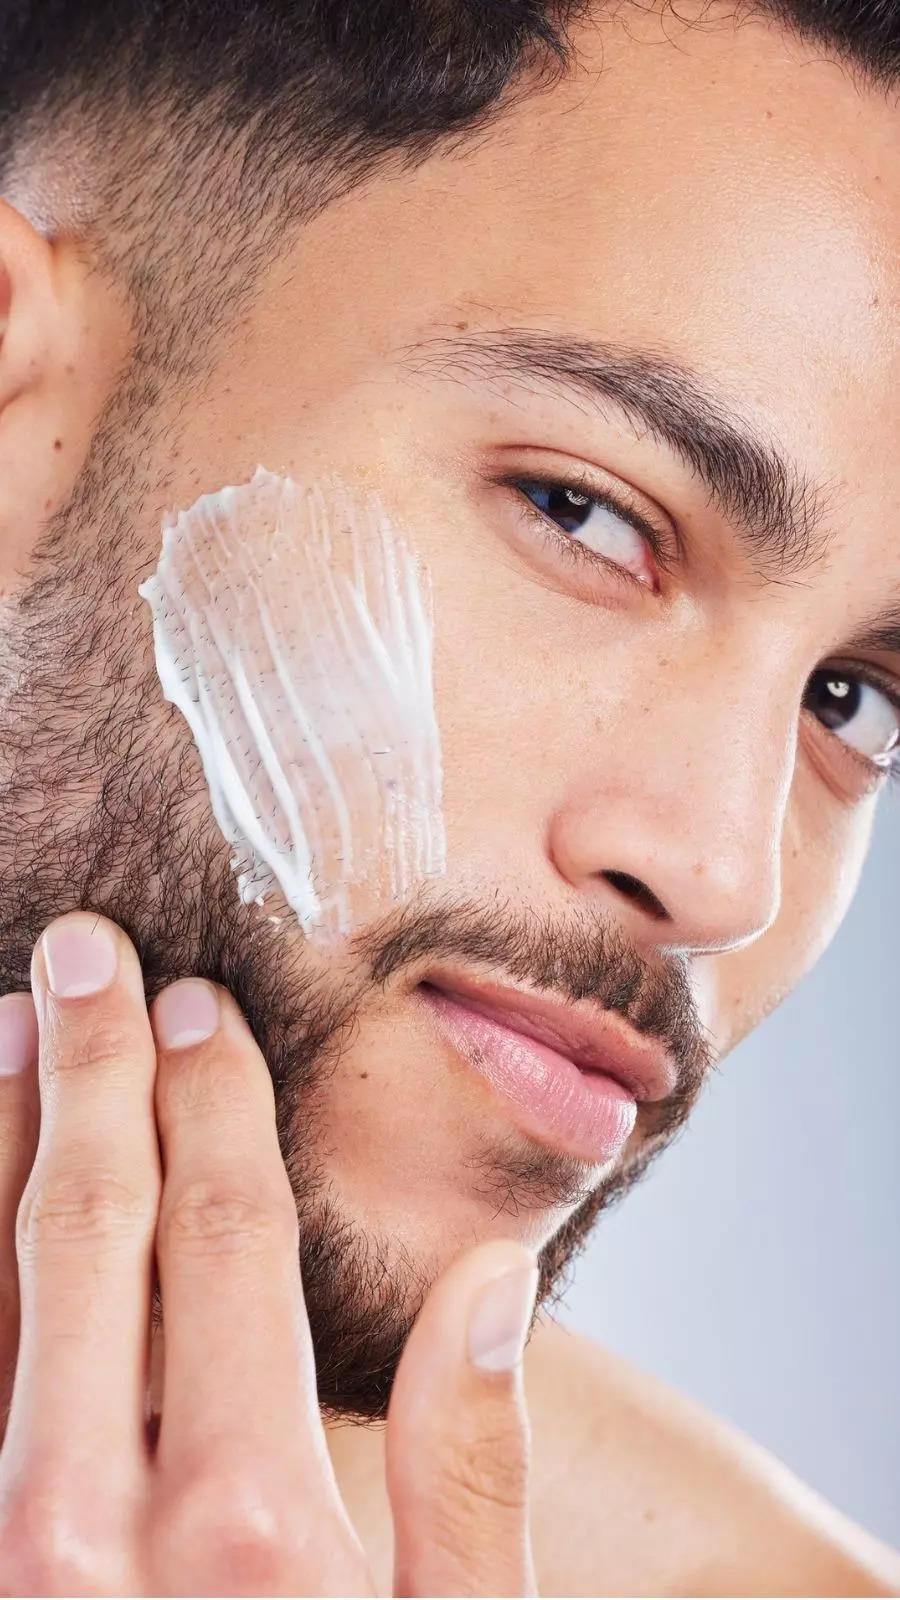 Winter Skin Care Tips For Men in Hindi: